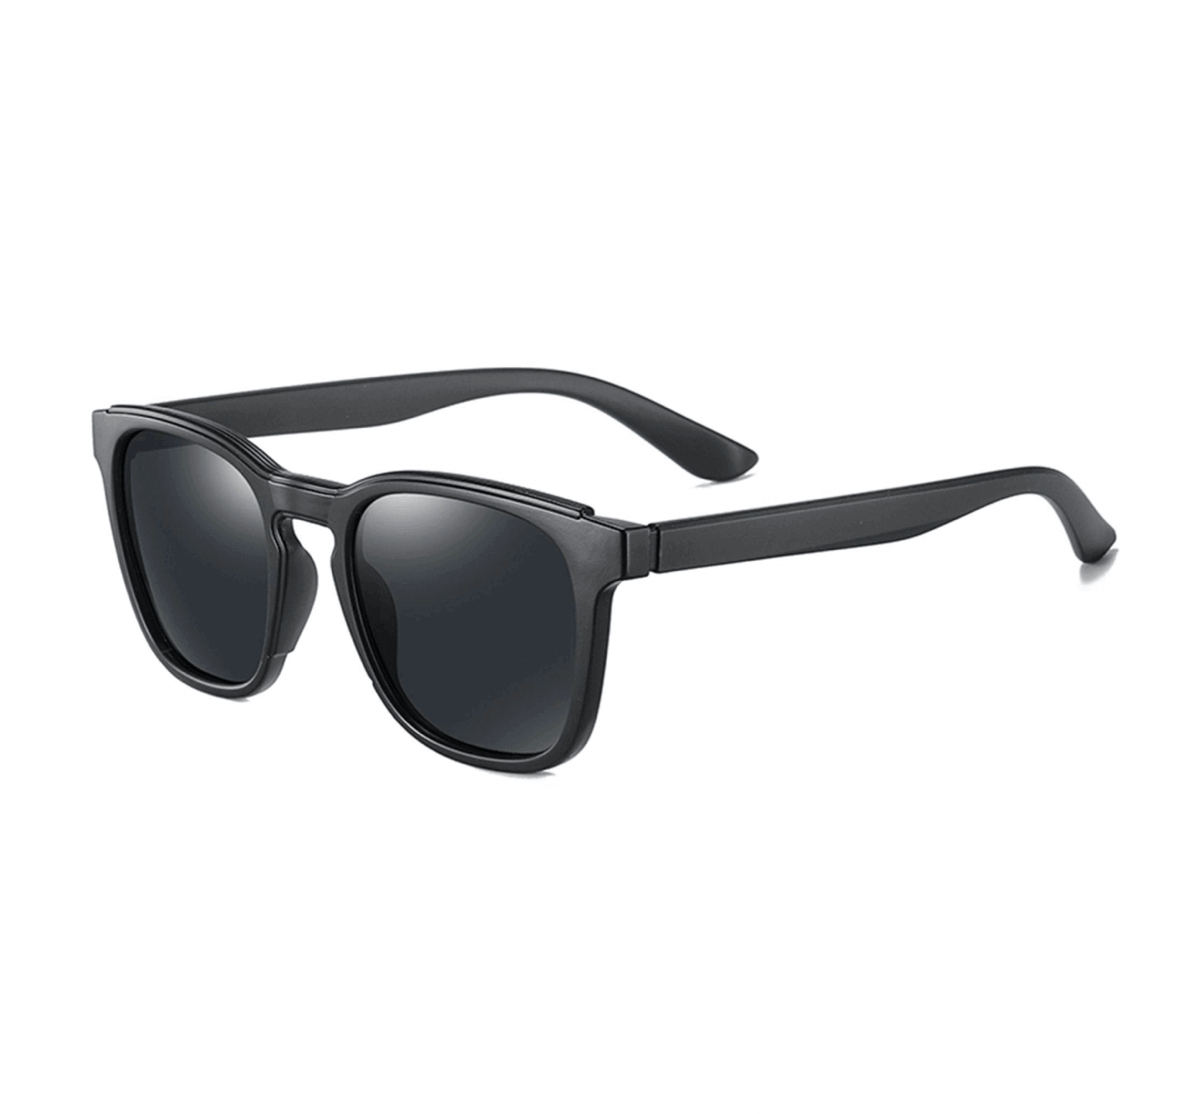 wholesale sunglasses polarized, Unisex classic Sunglasses, wholesale polarized sunglasses China, bulk polarized sunglasses, sunglasses factory